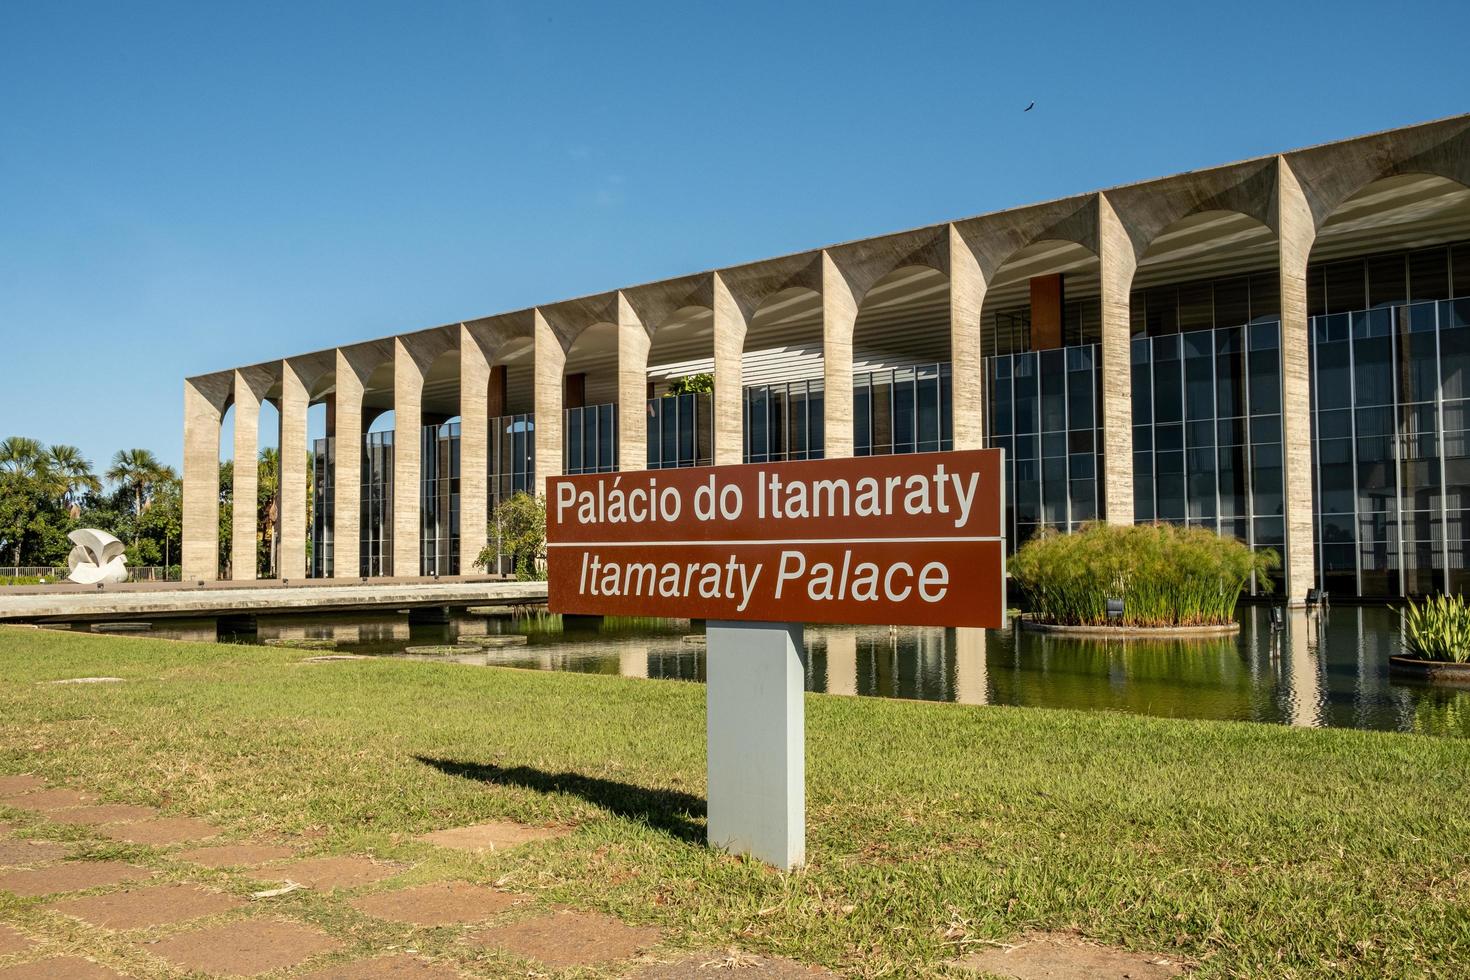 são paulo, brasil, maio de 2019 - palácio itamaraty, sede do ministério das relações exteriores do brasil foto